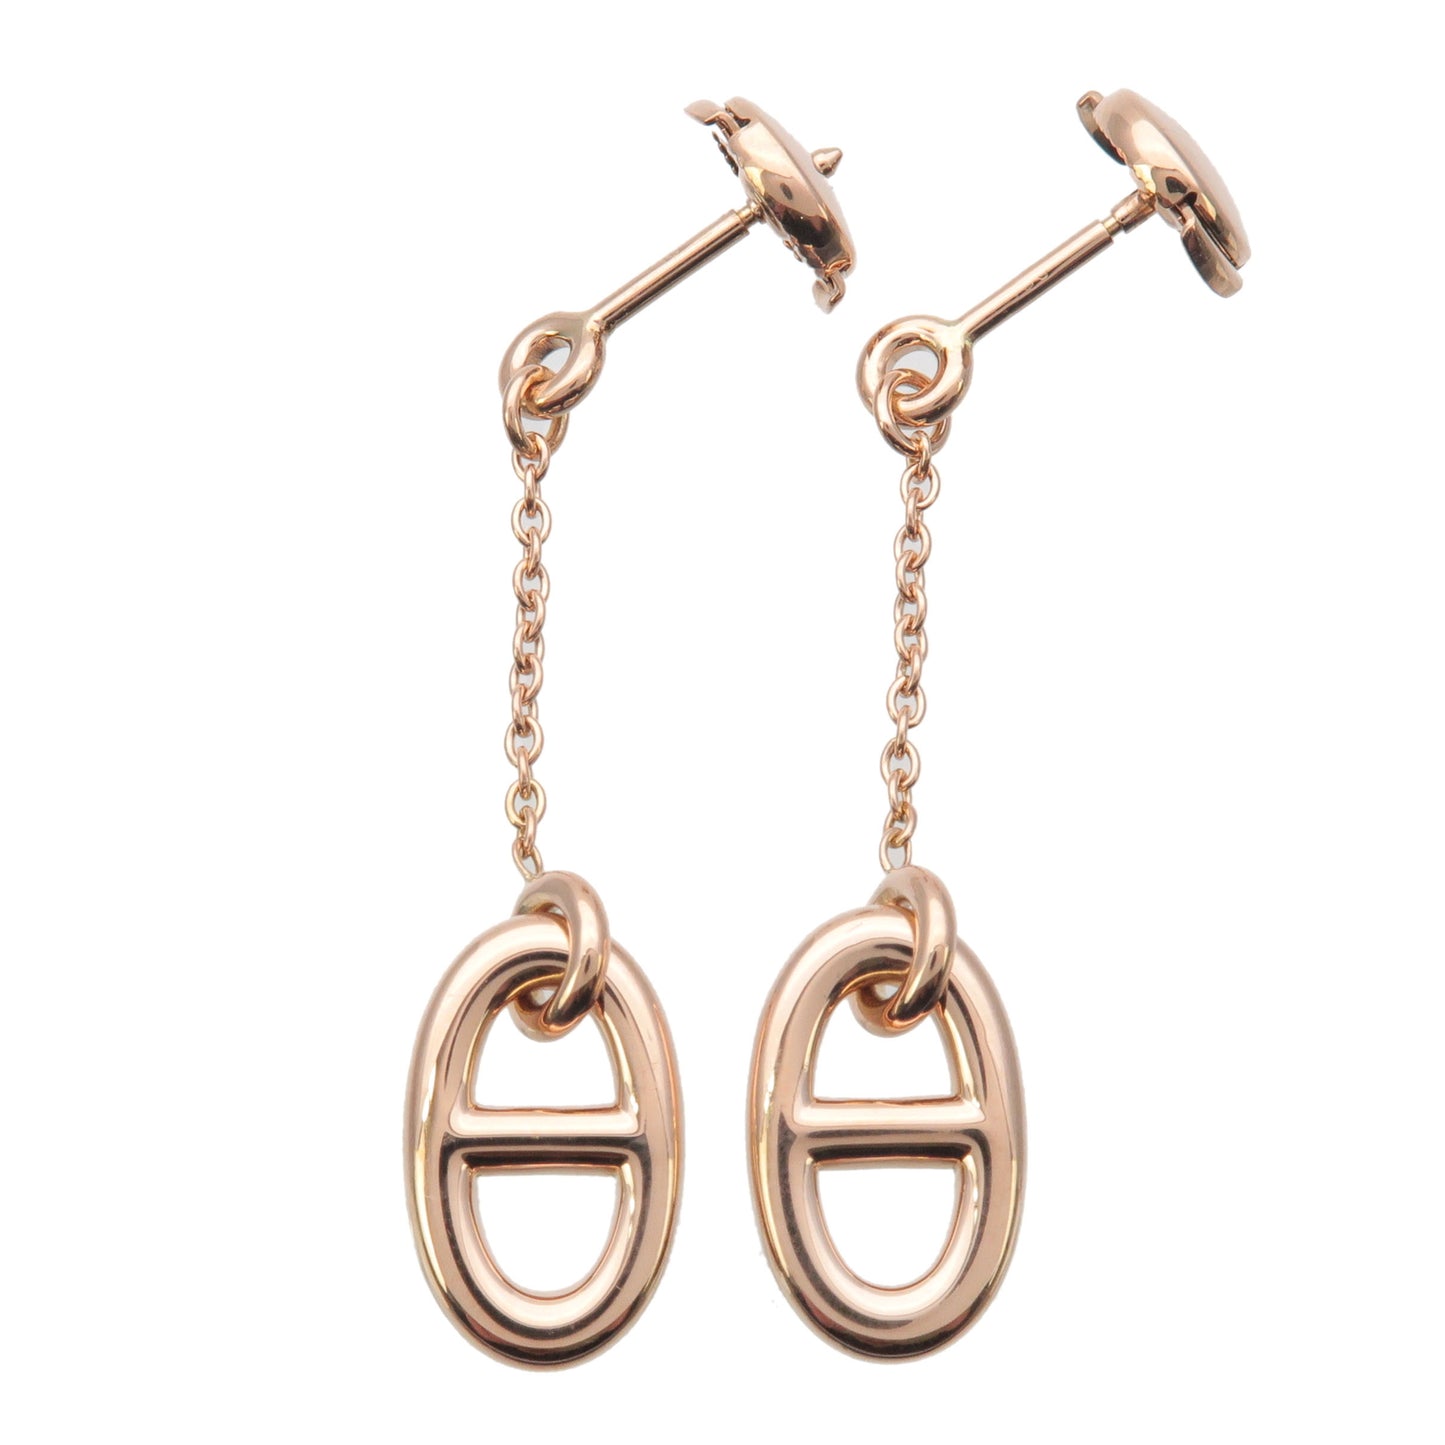 HERMES-Chene-Dunkle-Farandole-PM-Earrings-K18-750-Rose-Gold